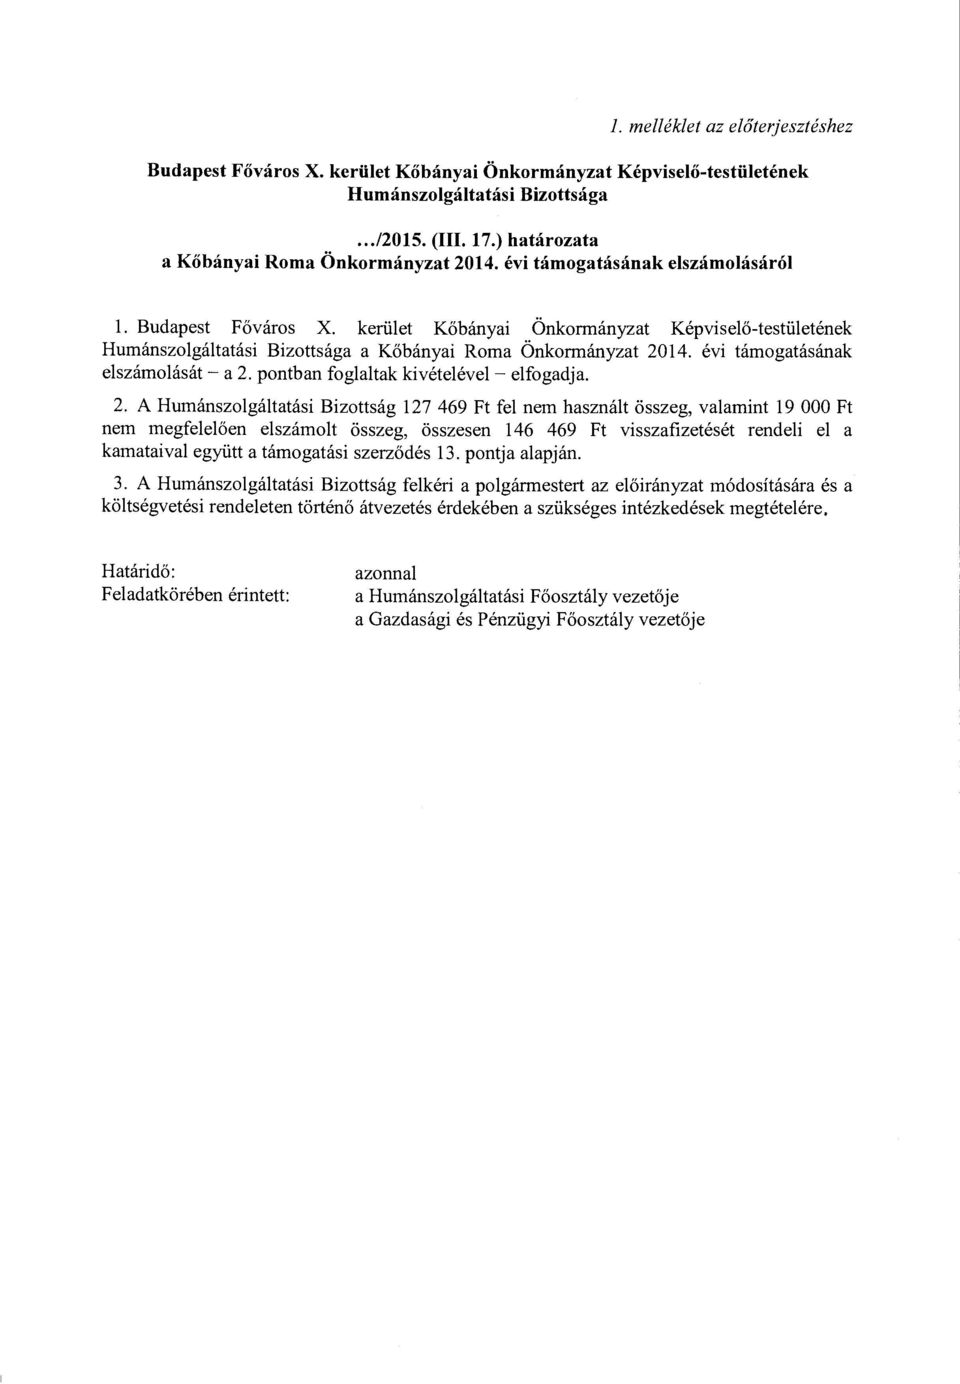 kerület Kőbányai Önkormányzat Képviselő-testületének Humánszolgáltatási Bizottsága a Kőbányai Roma Önkormányzat 2014. évi támogatásának elszámolását - a 2. pontban foglaltak kivételével - elfogadja.